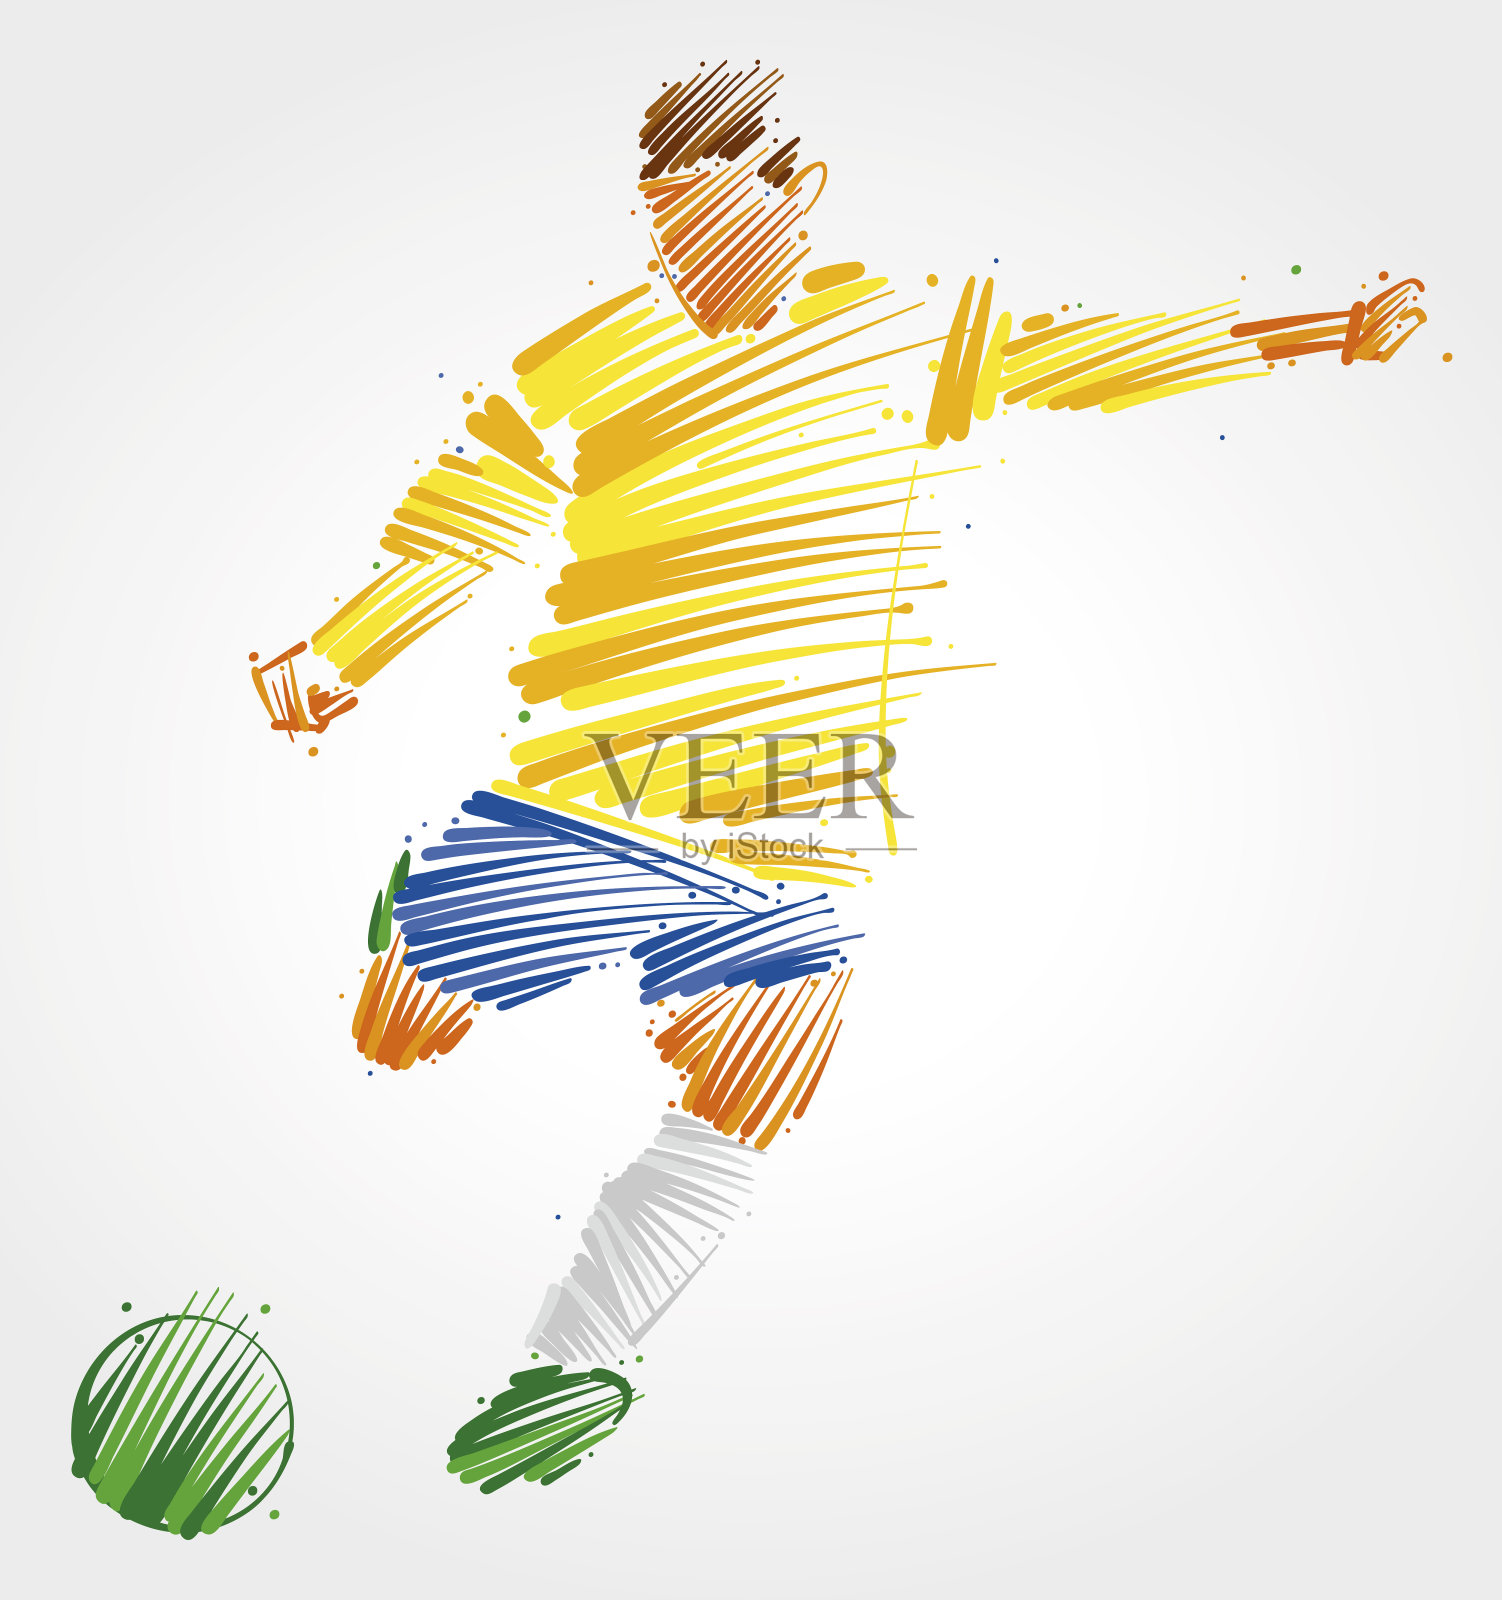 足球运动员在踢球插画图片素材